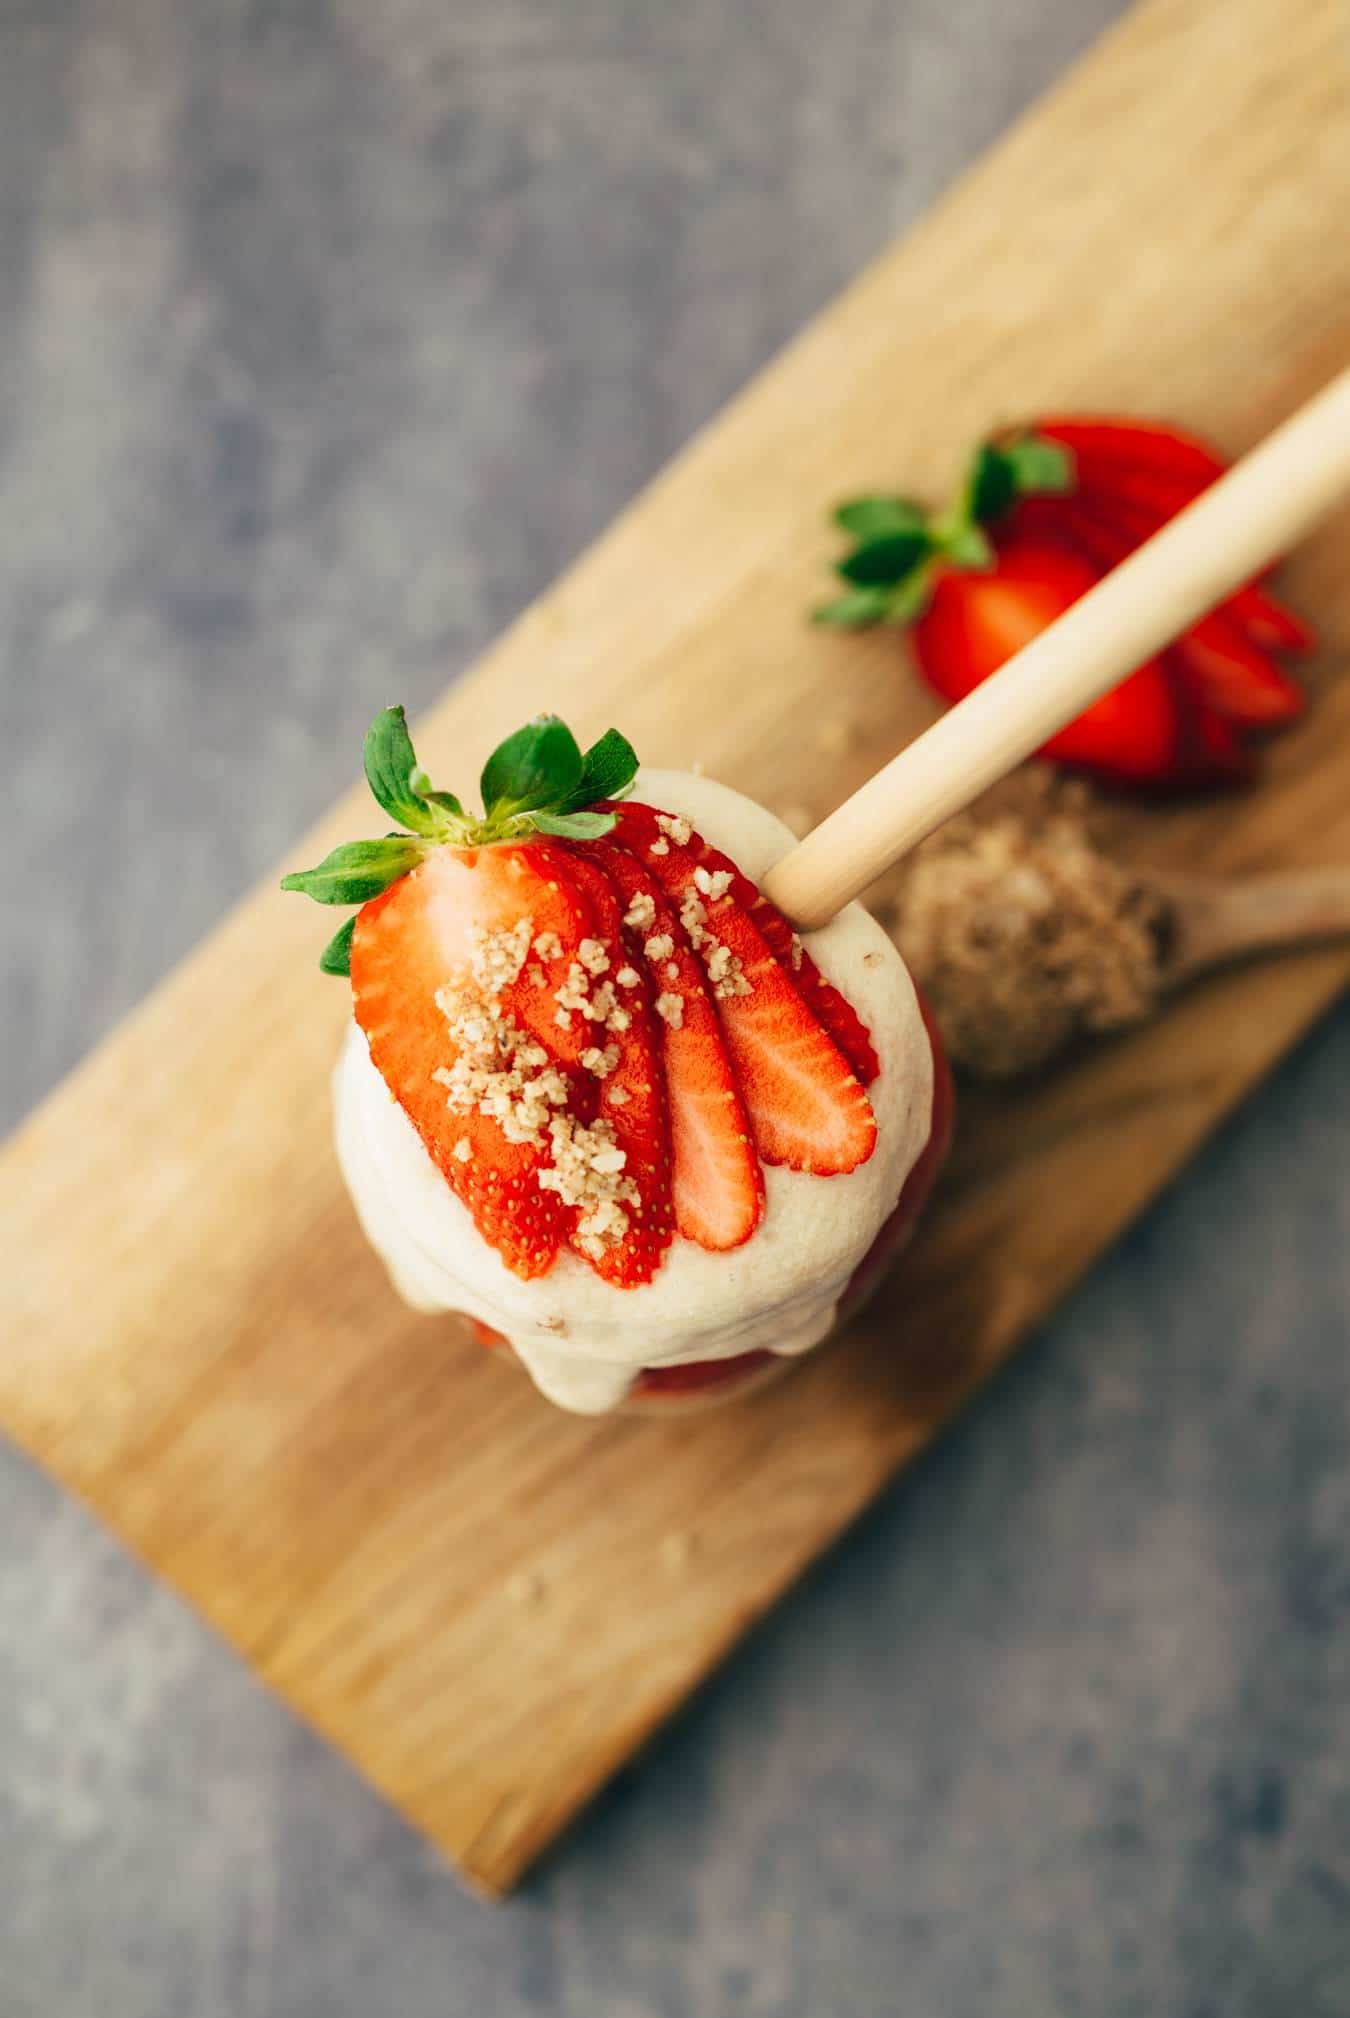 Erdbeer-Protein Smoothie mit leckerem Nuss-Crunch aus Pekannüssen Rezept